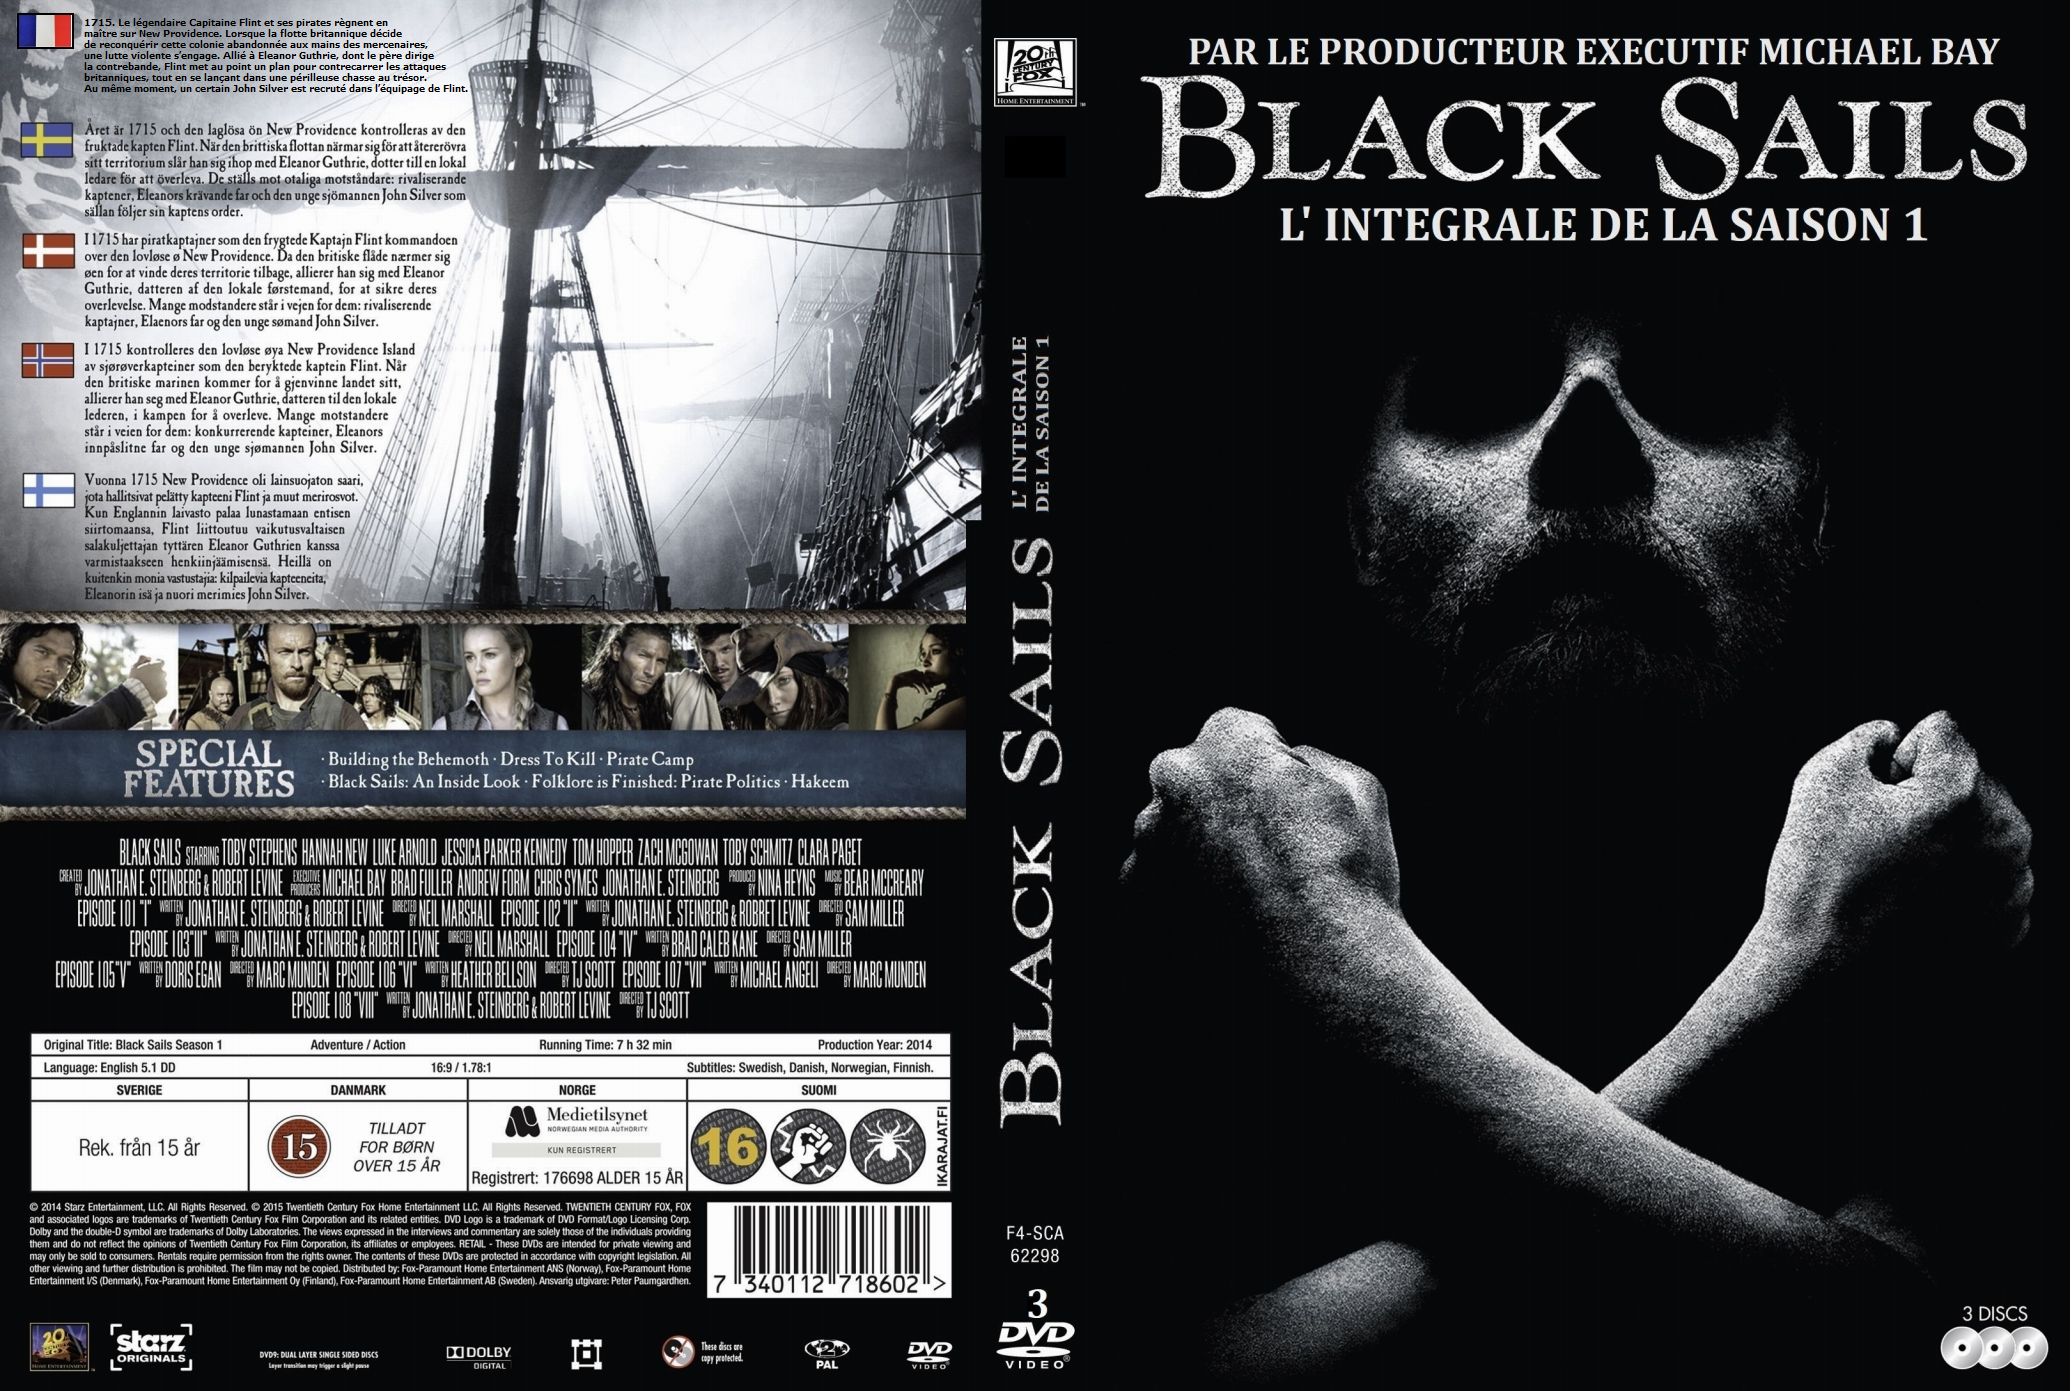 Jaquette DVD Black Sails Saison 1 custom 